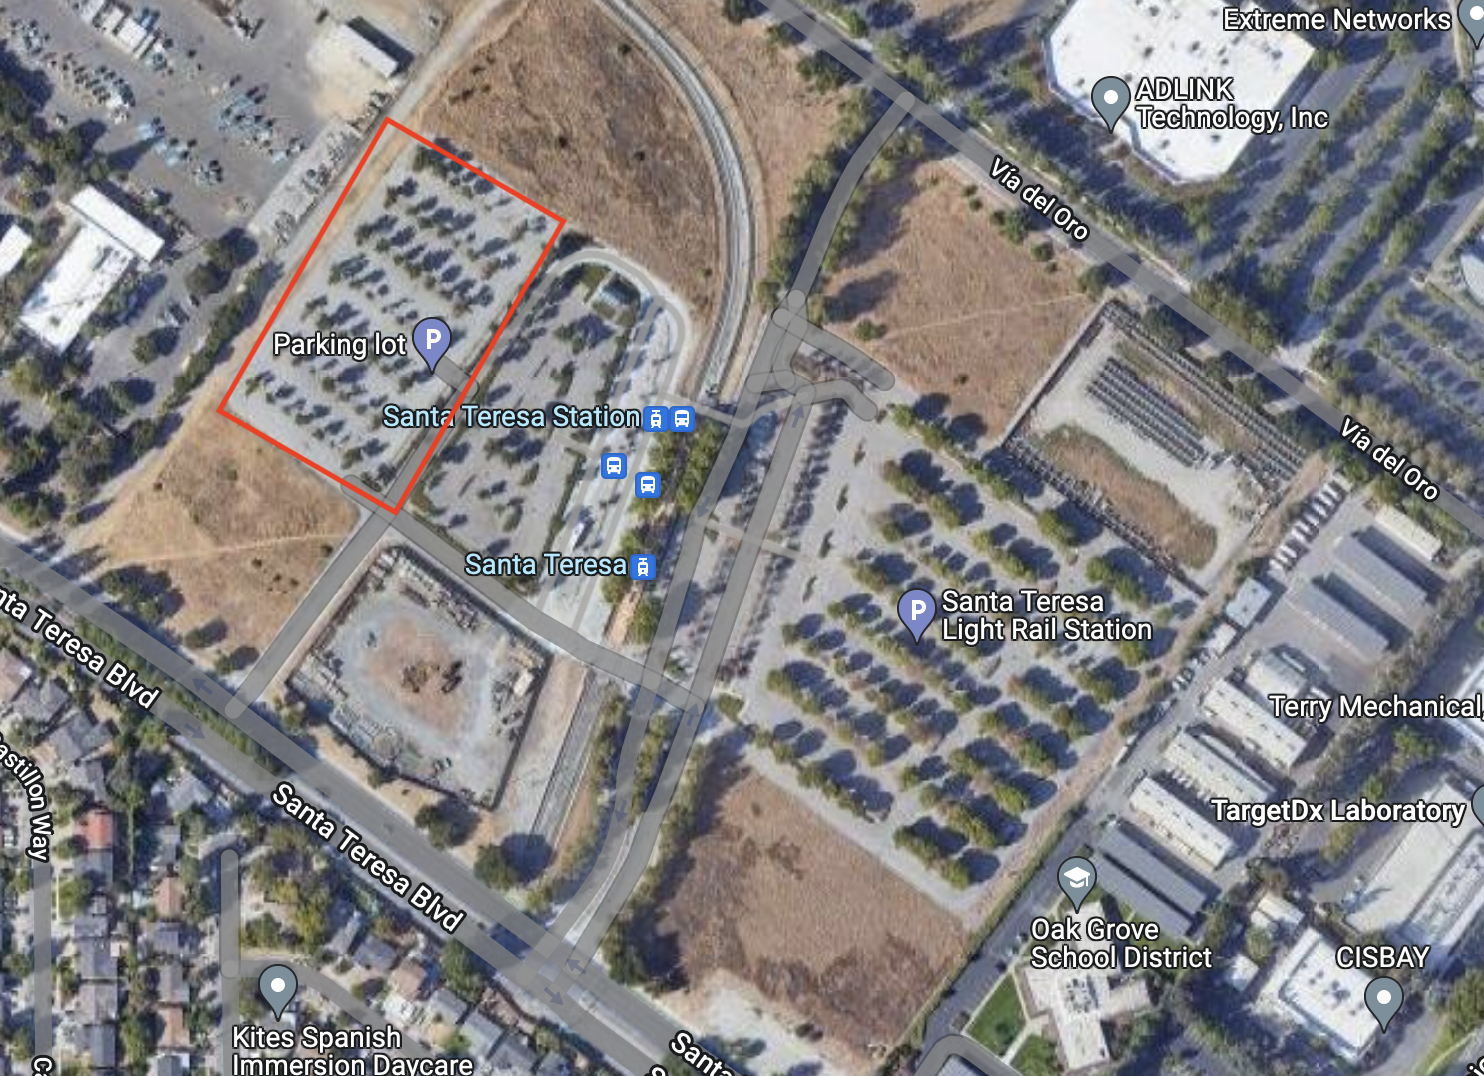 Proposed site for the safe parking program at Santa Teresa light rail station’s northern parking lot.